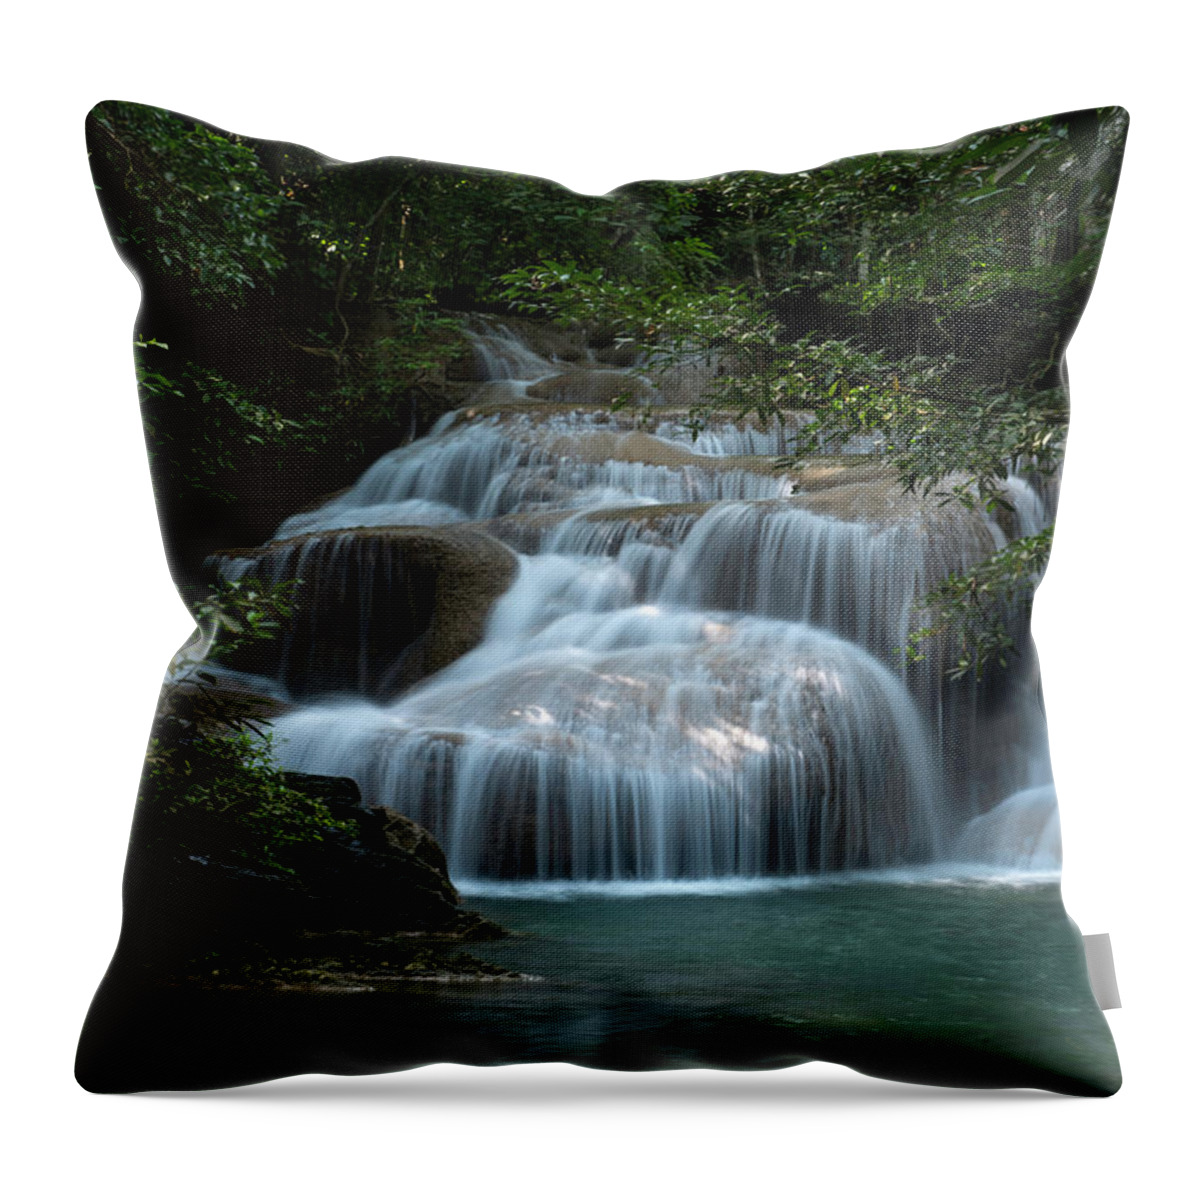 Landscape Throw Pillow featuring the photograph Erawan Falls First Falls by Scott Cunningham